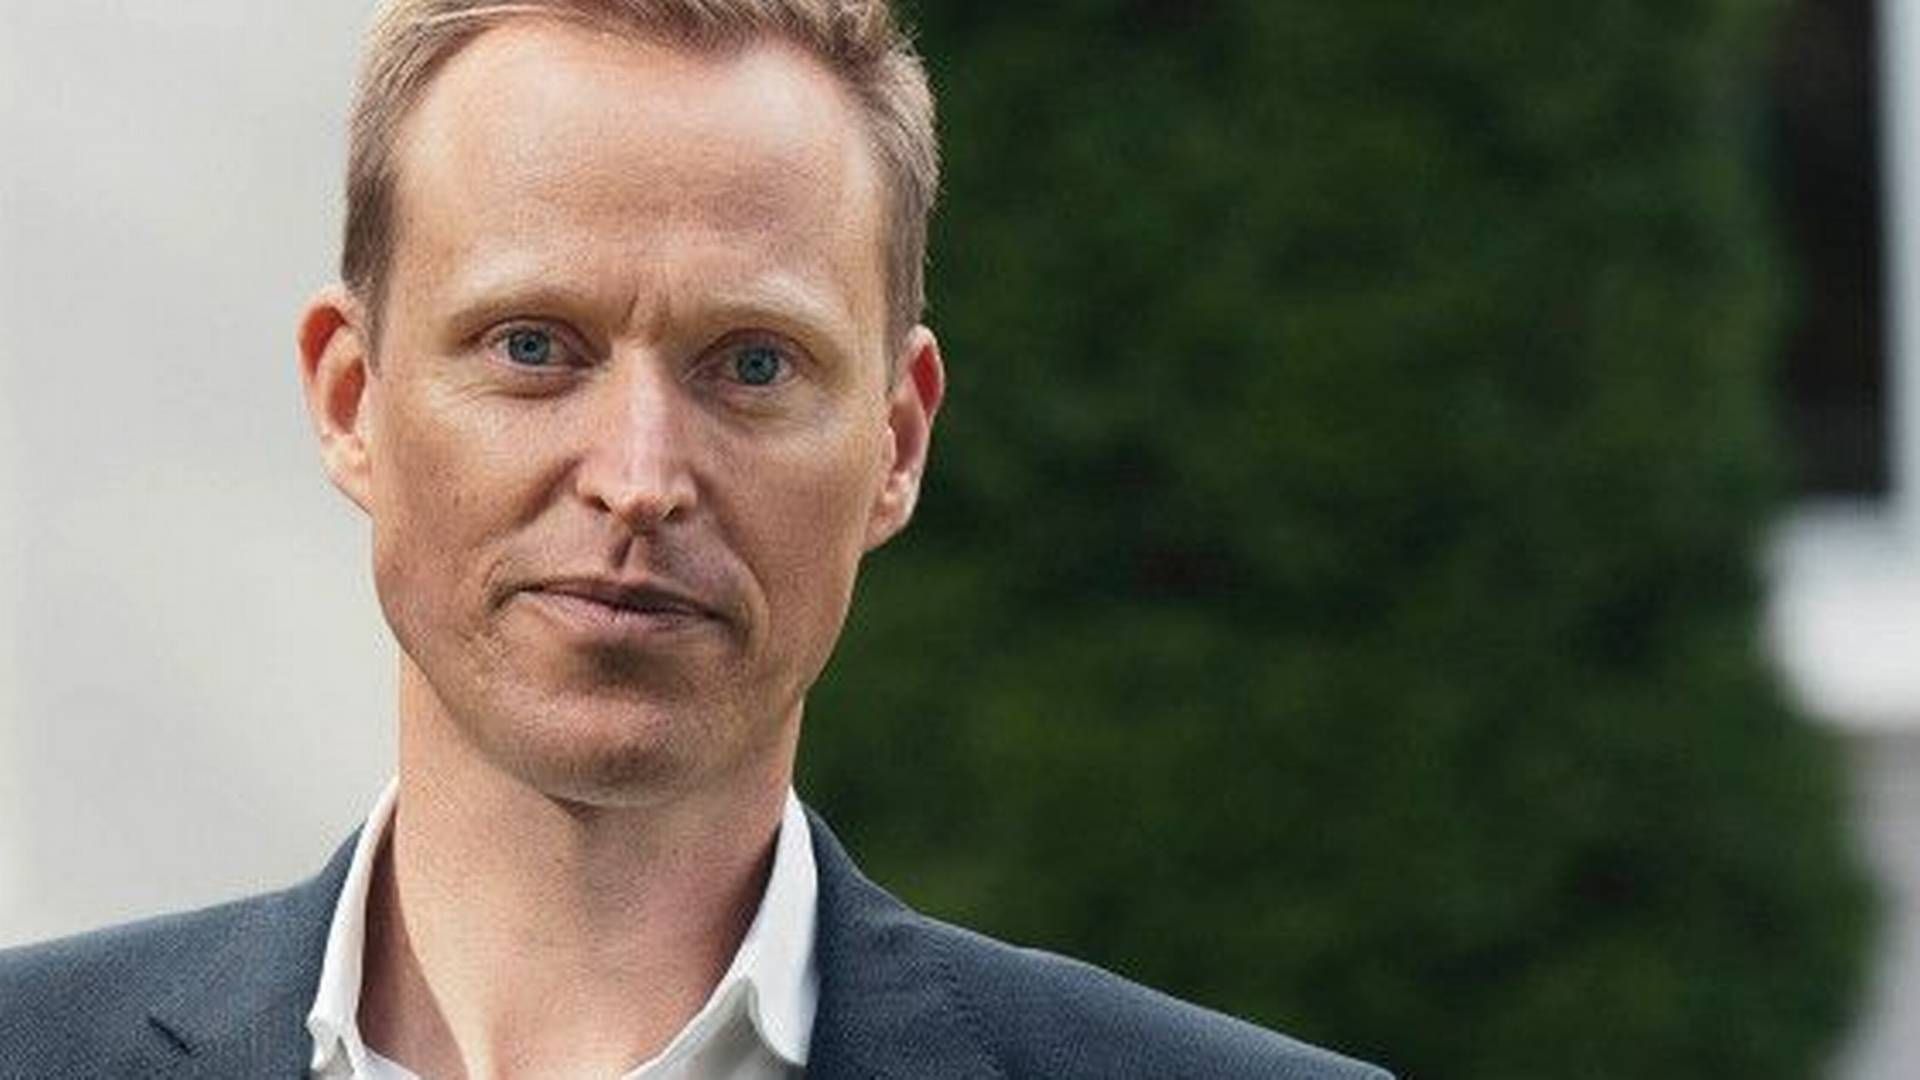 NY ROLLE: Håkon Kavli er ny investeringsdirektør i Reitan Kapital, som er en del av Reitan AS | Foto: Reitan Kapital